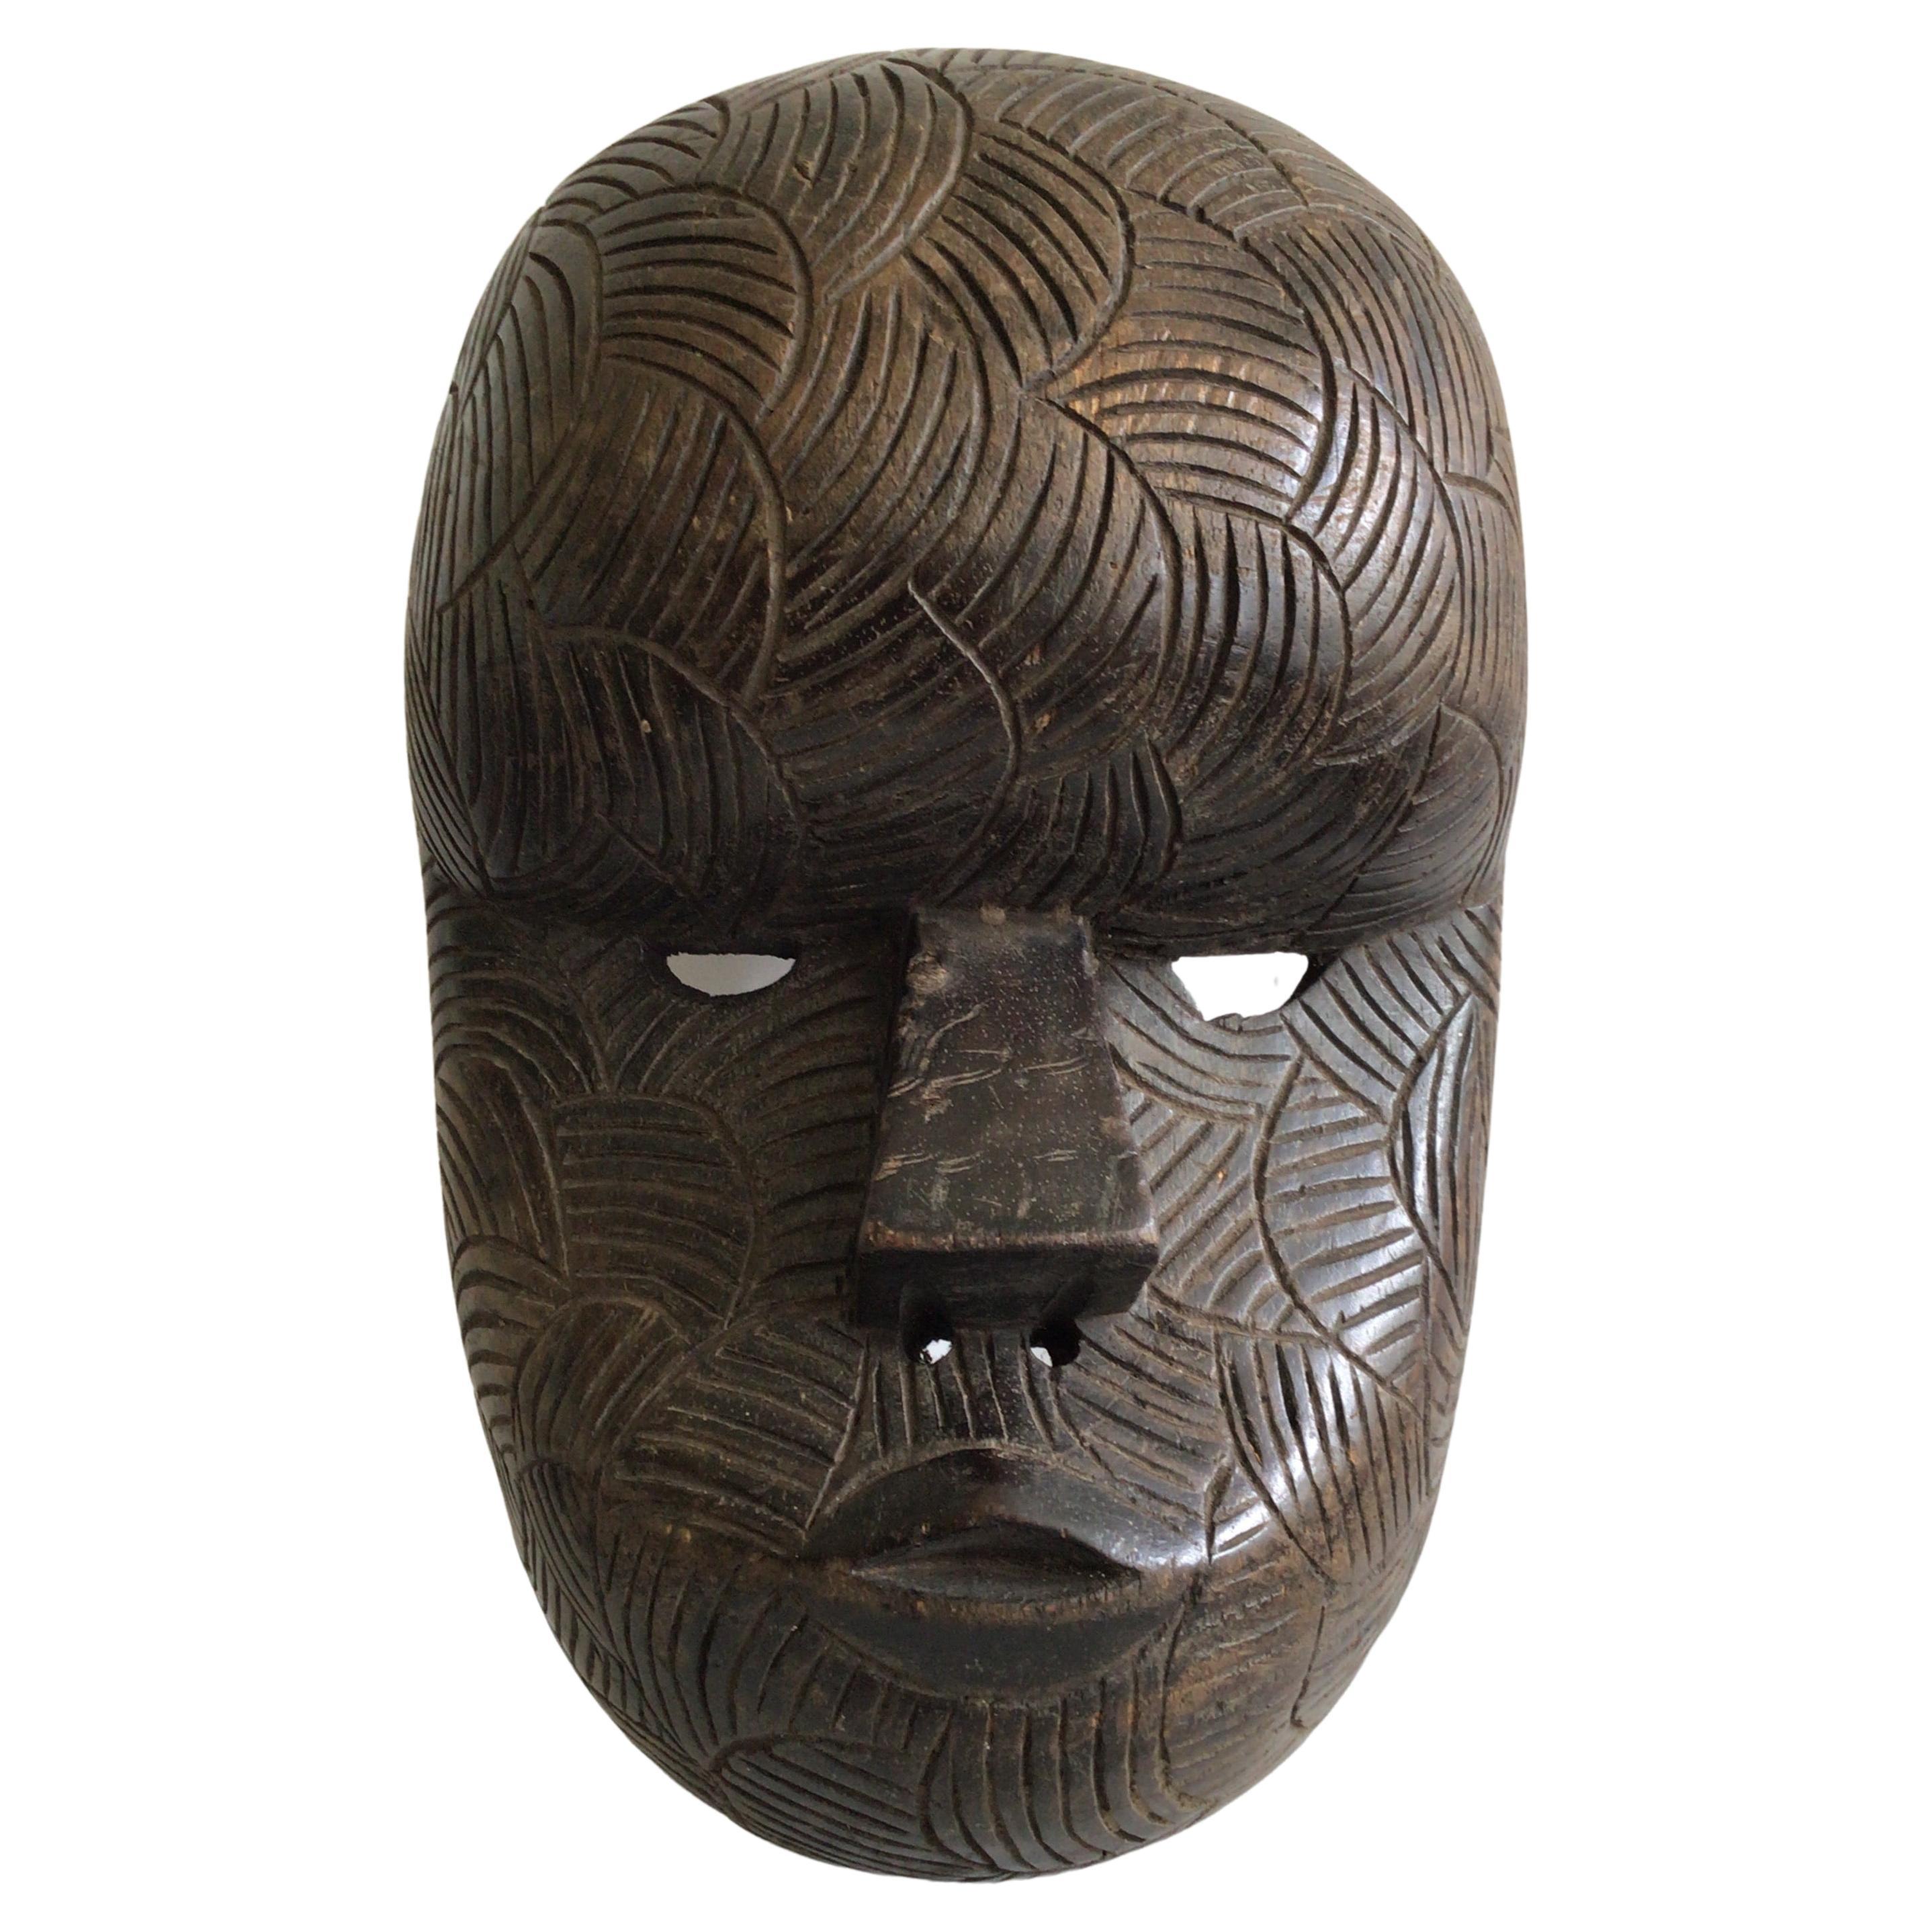 Masque africain en bois sculpté des années 1950